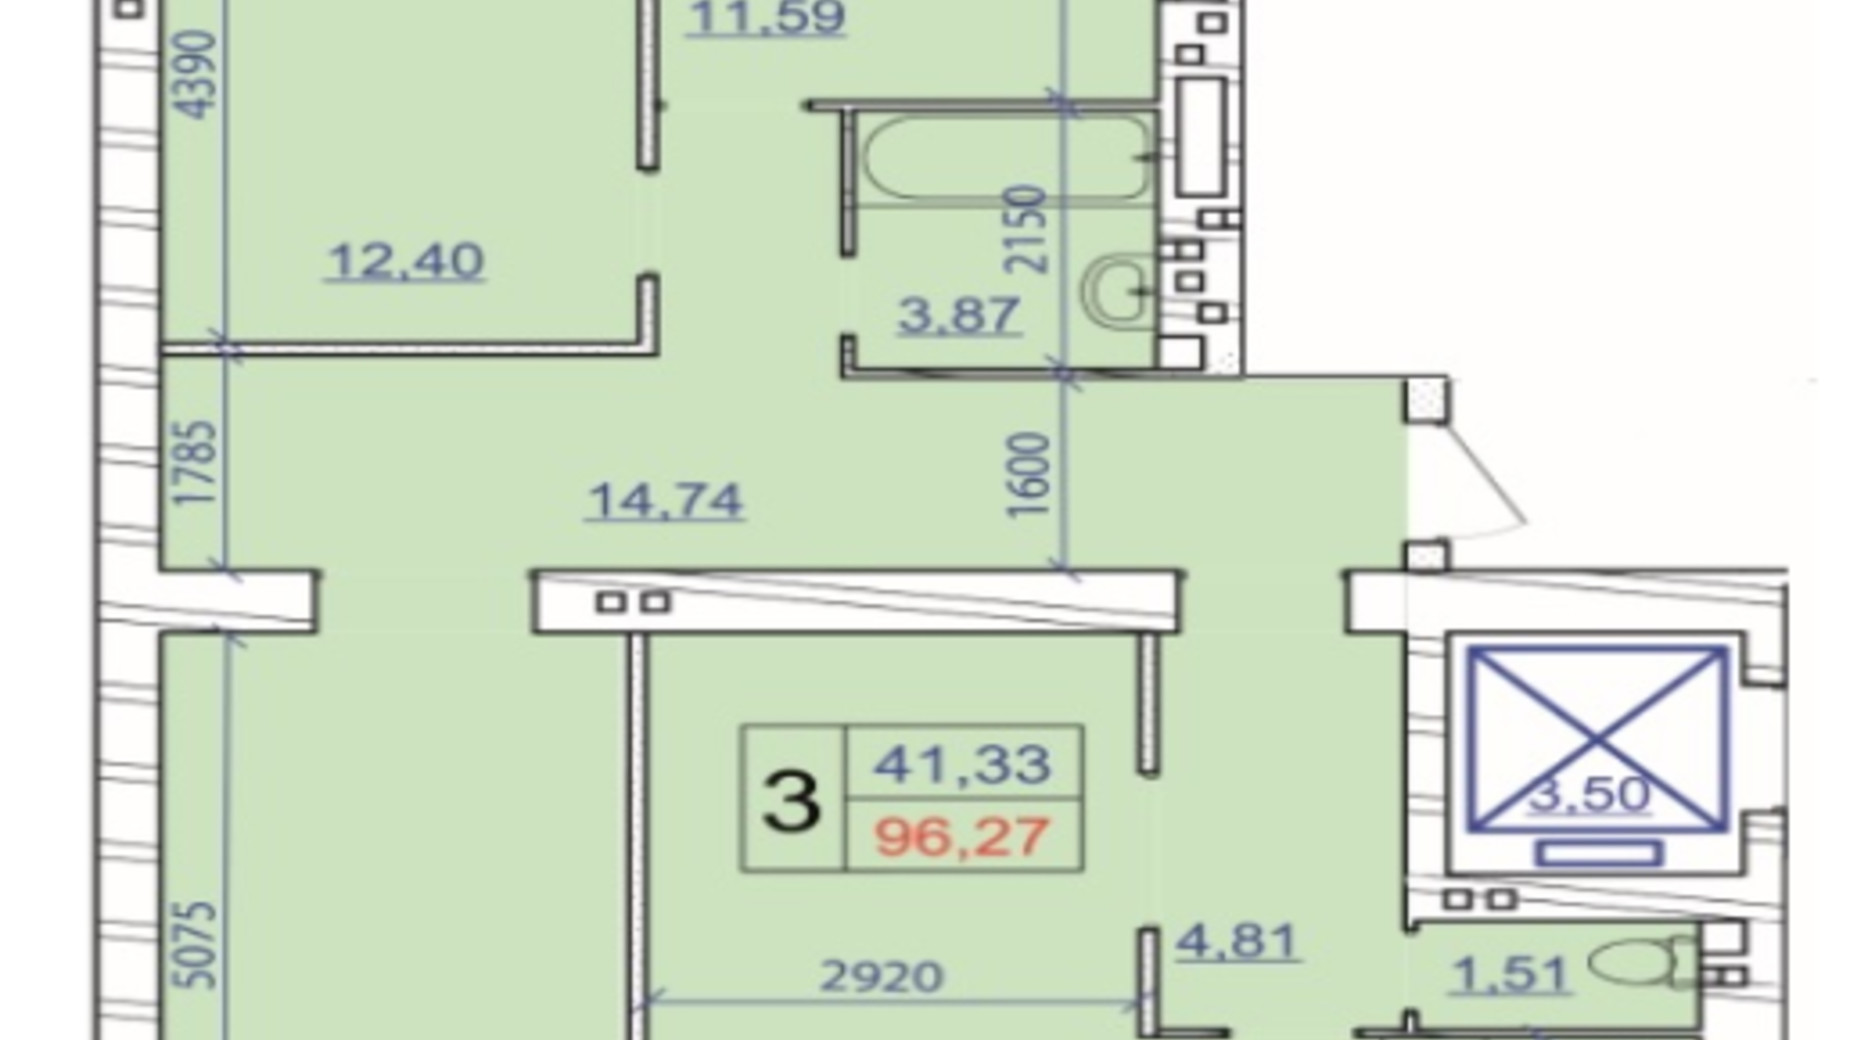 Планировка 3-комнатной квартиры в ЖК Grand Royal 96.27 м², фото 707928